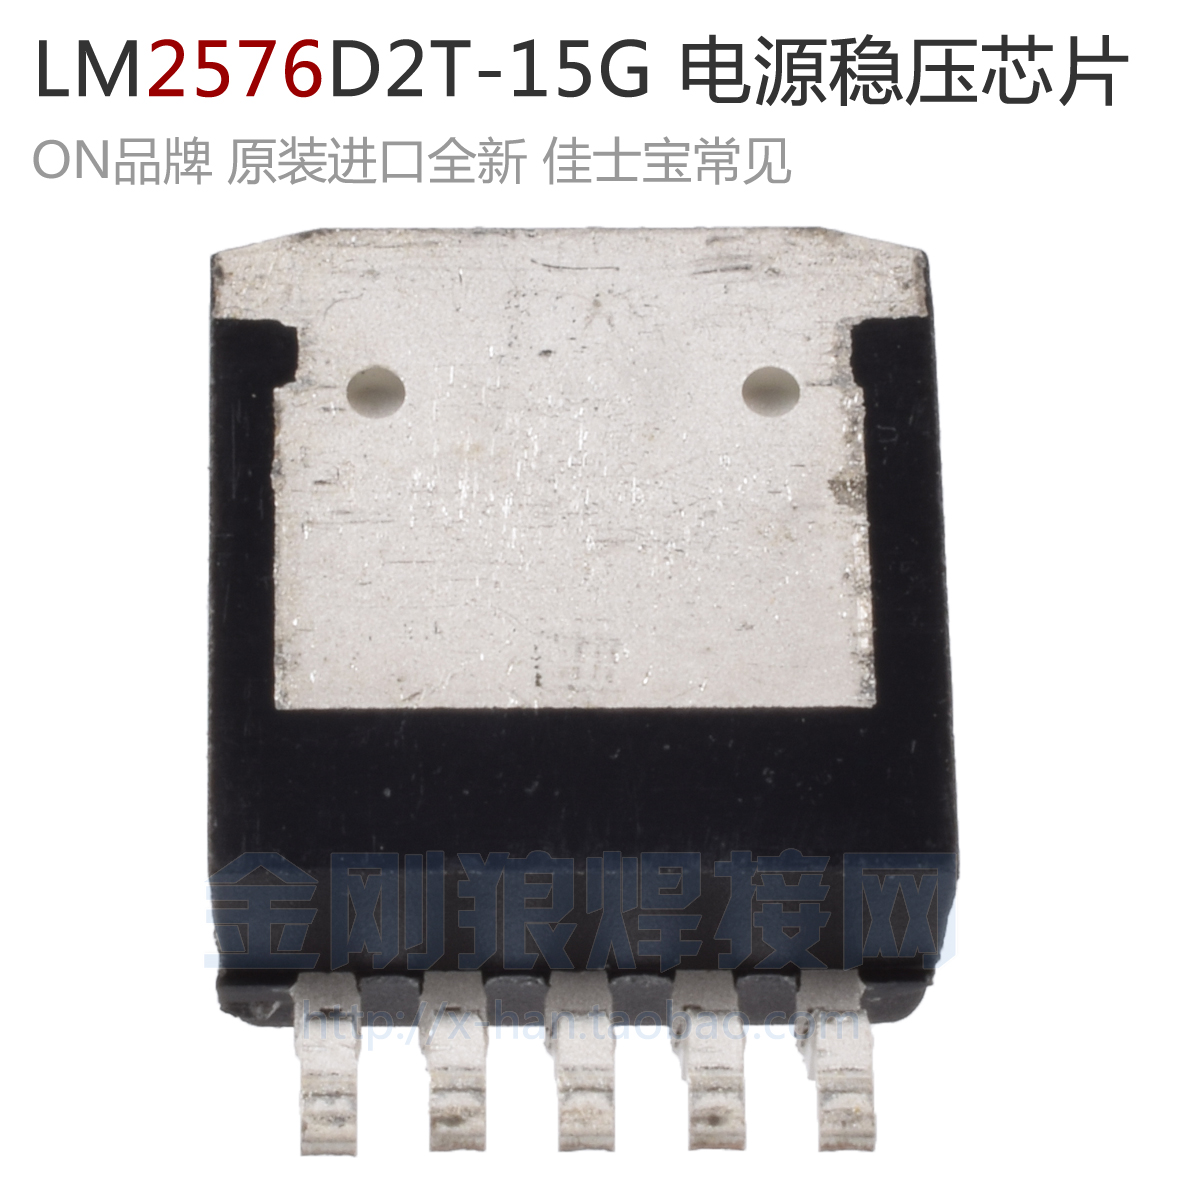 LM2576D2T-15G原装进口贴片开关电源稳压芯片深圳逆变焊机配件